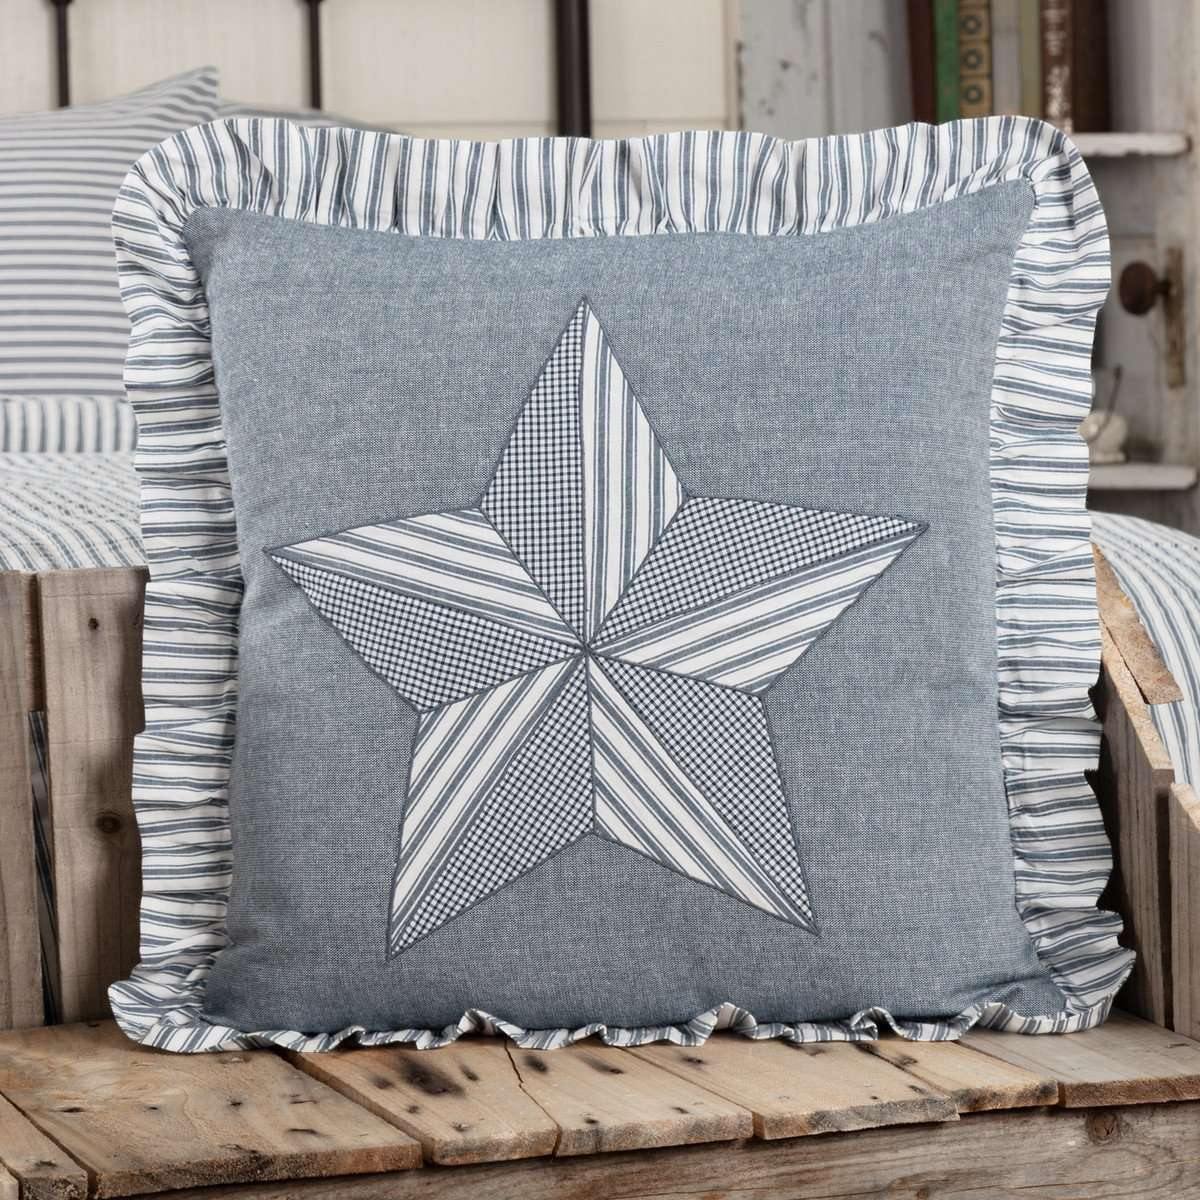 Sawyer Mill Blue Barn Star Pillow 18x18 VHC Brands